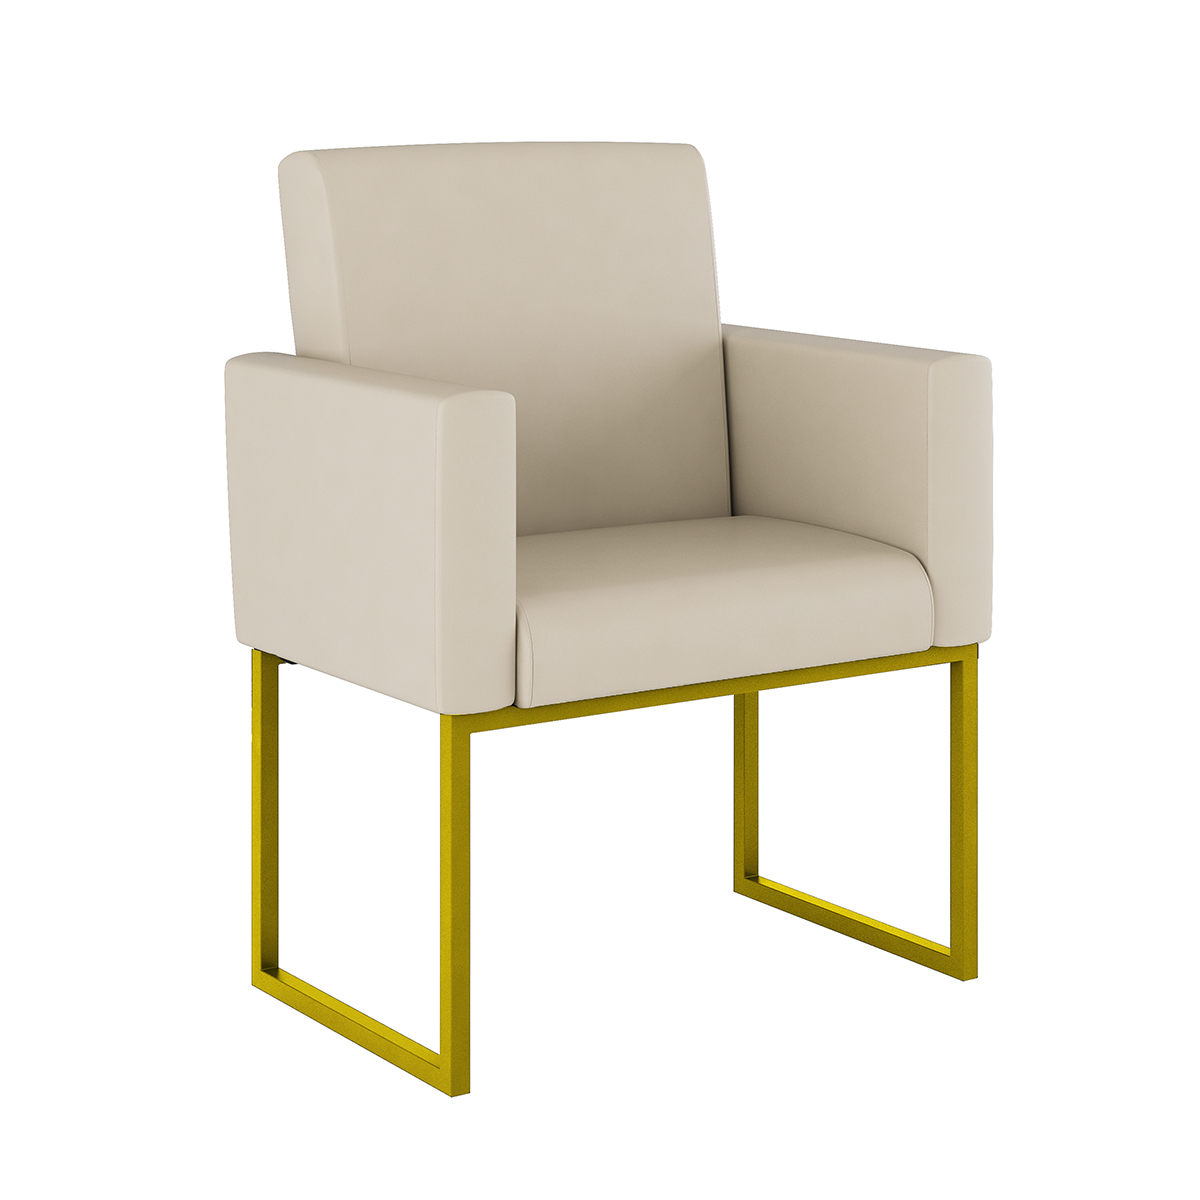 Poltrona Cadeira Decorativa Recepção Base de Ferro Dourada:courino Bege - 1